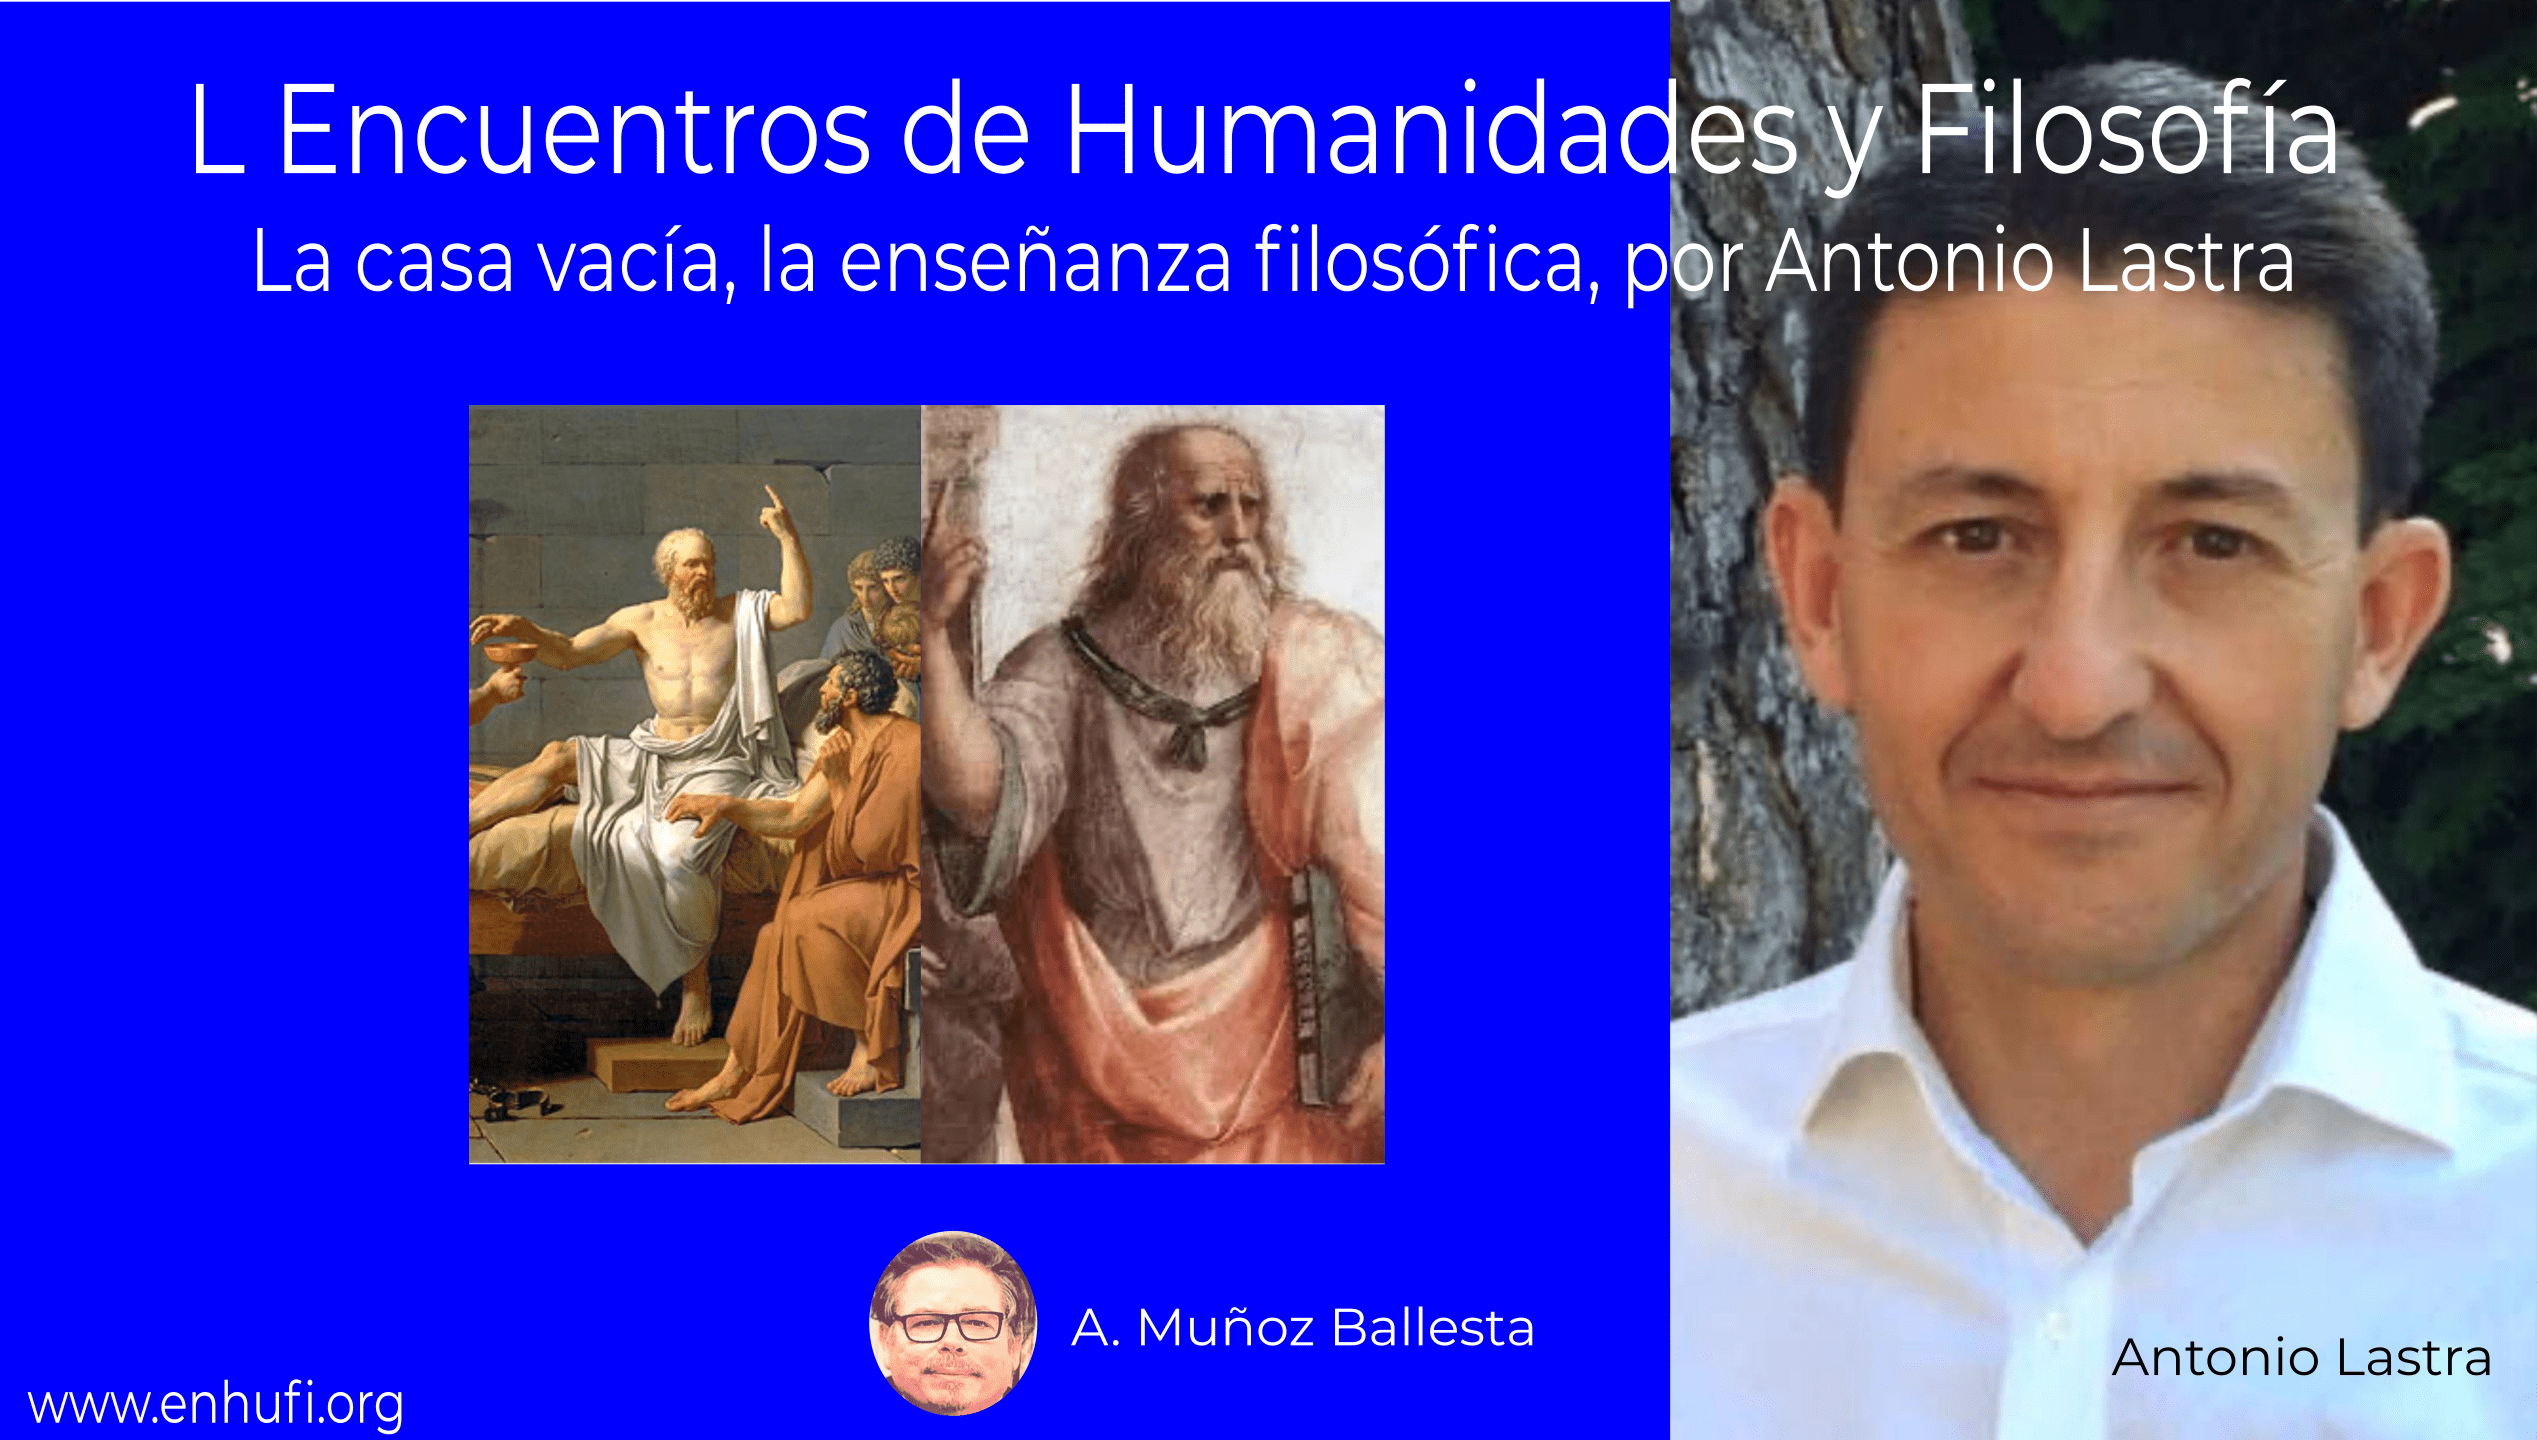 L Encuentros de Humanidades y Filosfofía,  La casa vacía, la enseñanza filosófica, por Antonio Lastra.